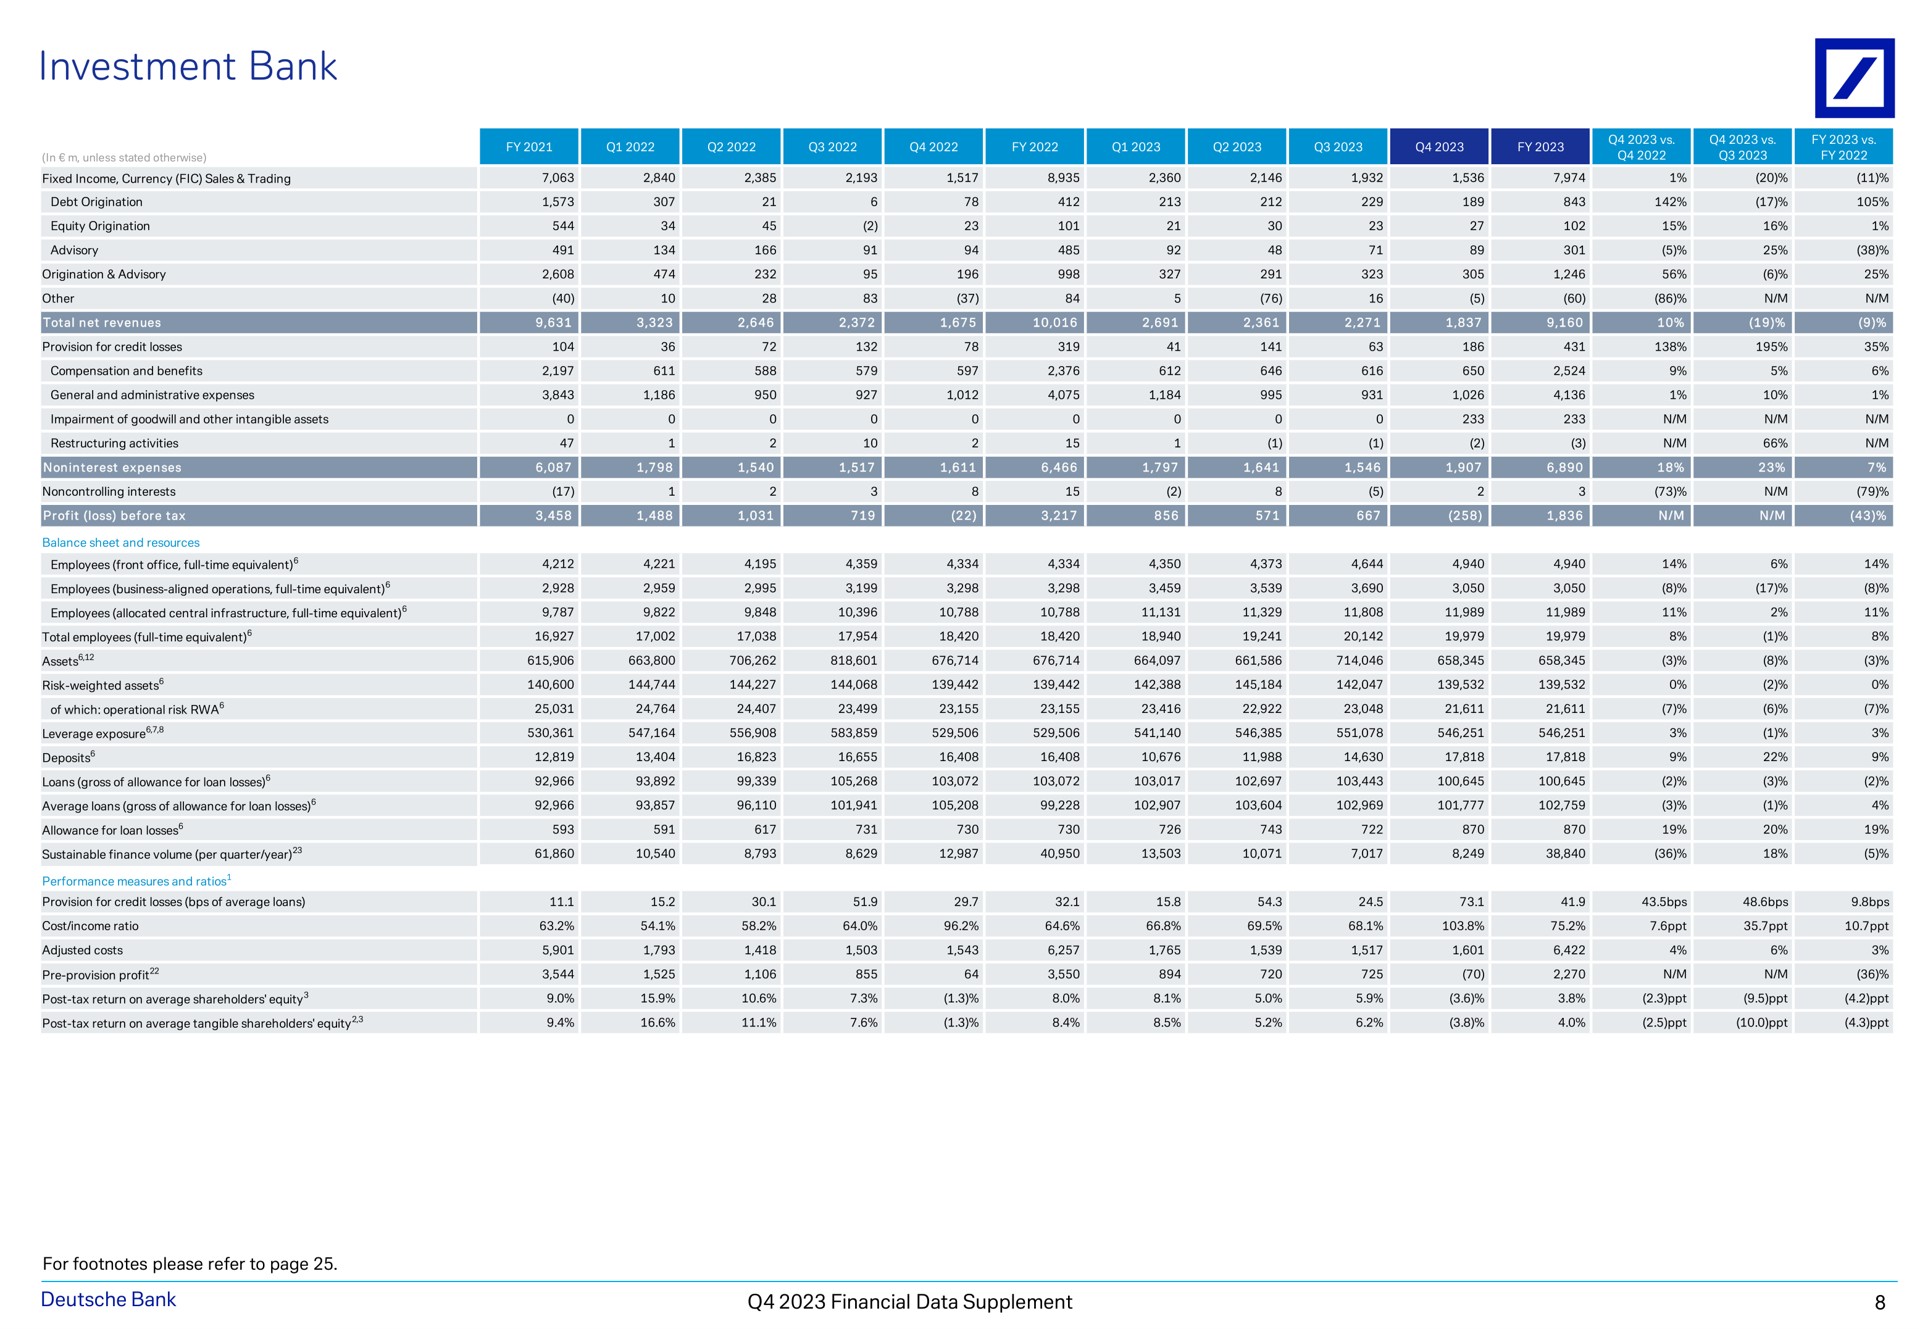 investment bank so a a financial data supplement | Deutsche Bank